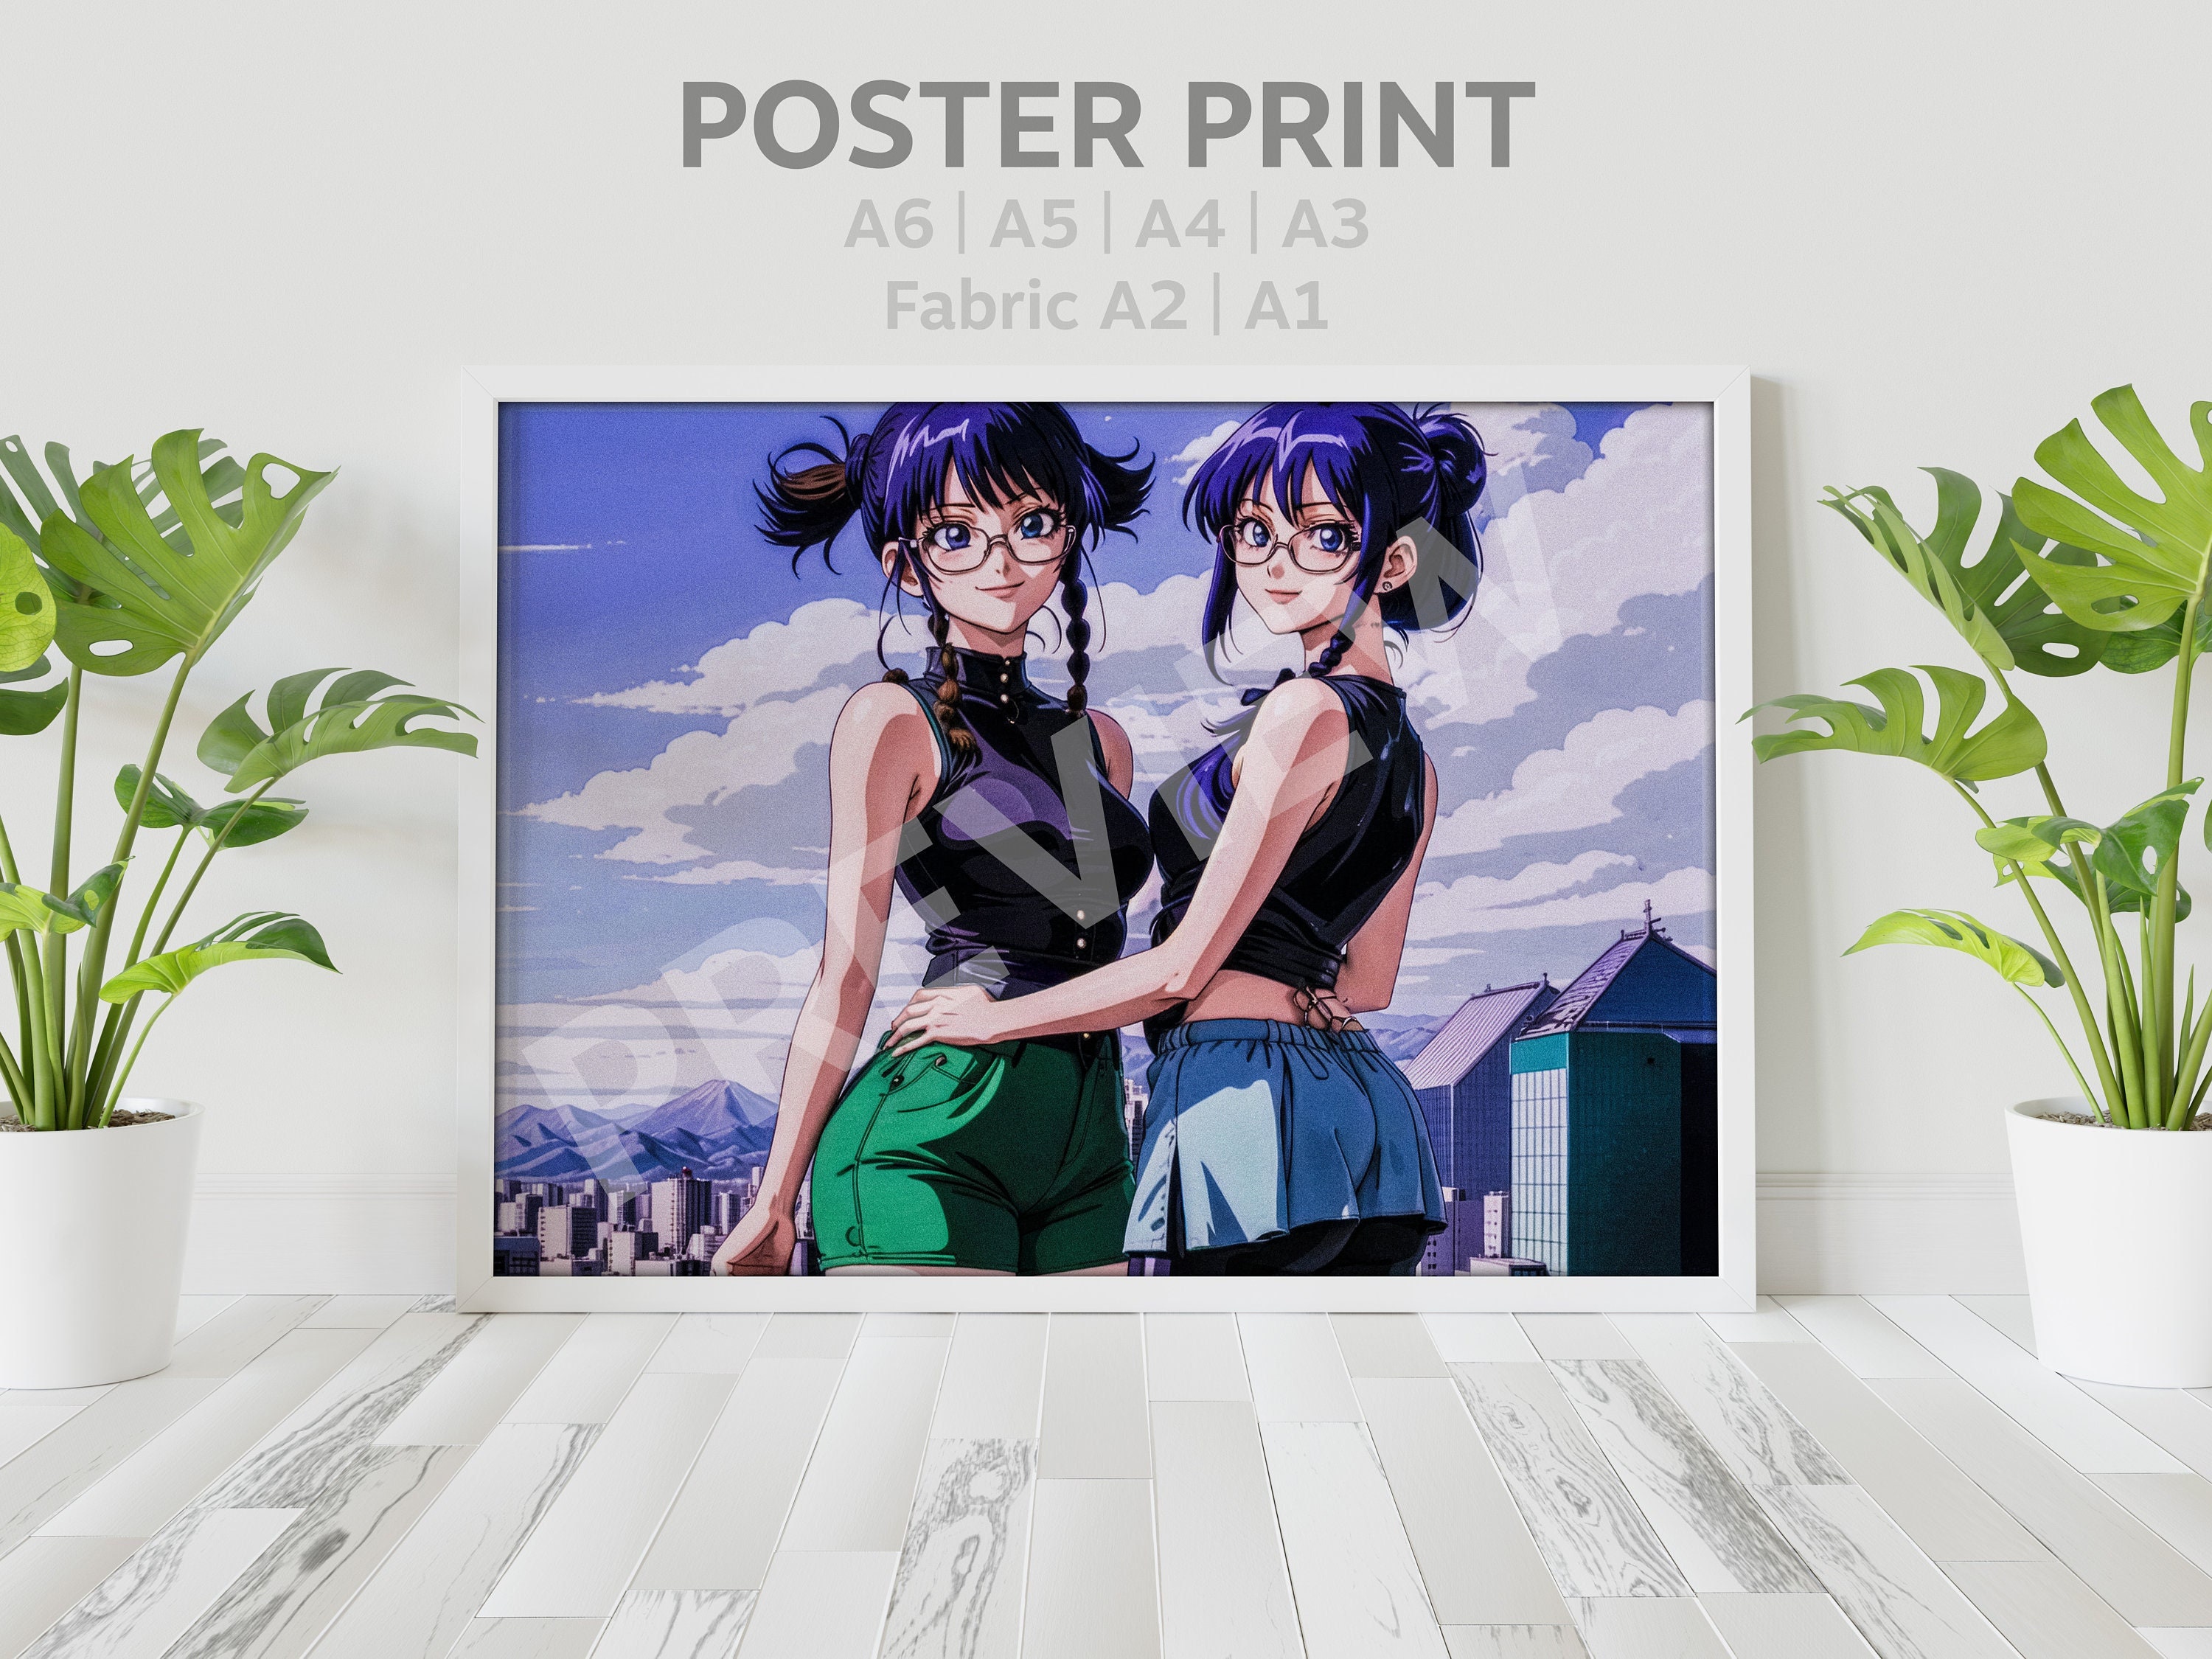  Mirai Nikki Anime Fabric Wall Scroll Poster (16 X 21